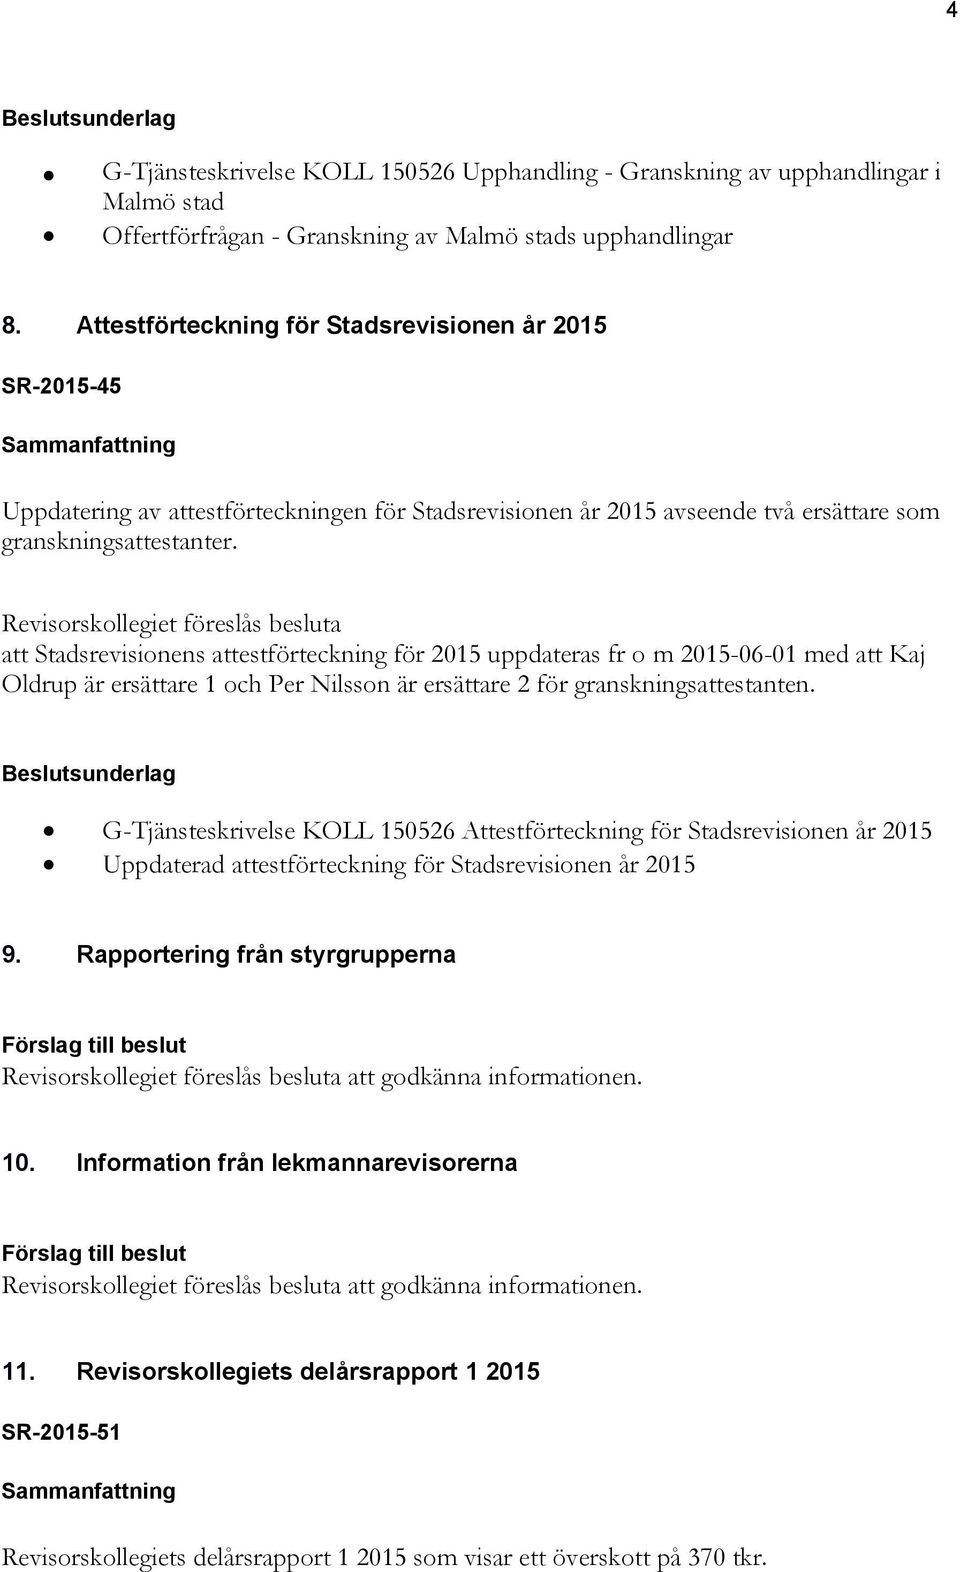 att Stadsrevisionens attestförteckning för 2015 uppdateras fr o m 2015-06-01 med att Kaj Oldrup är ersättare 1 och Per Nilsson är ersättare 2 för granskningsattestanten.